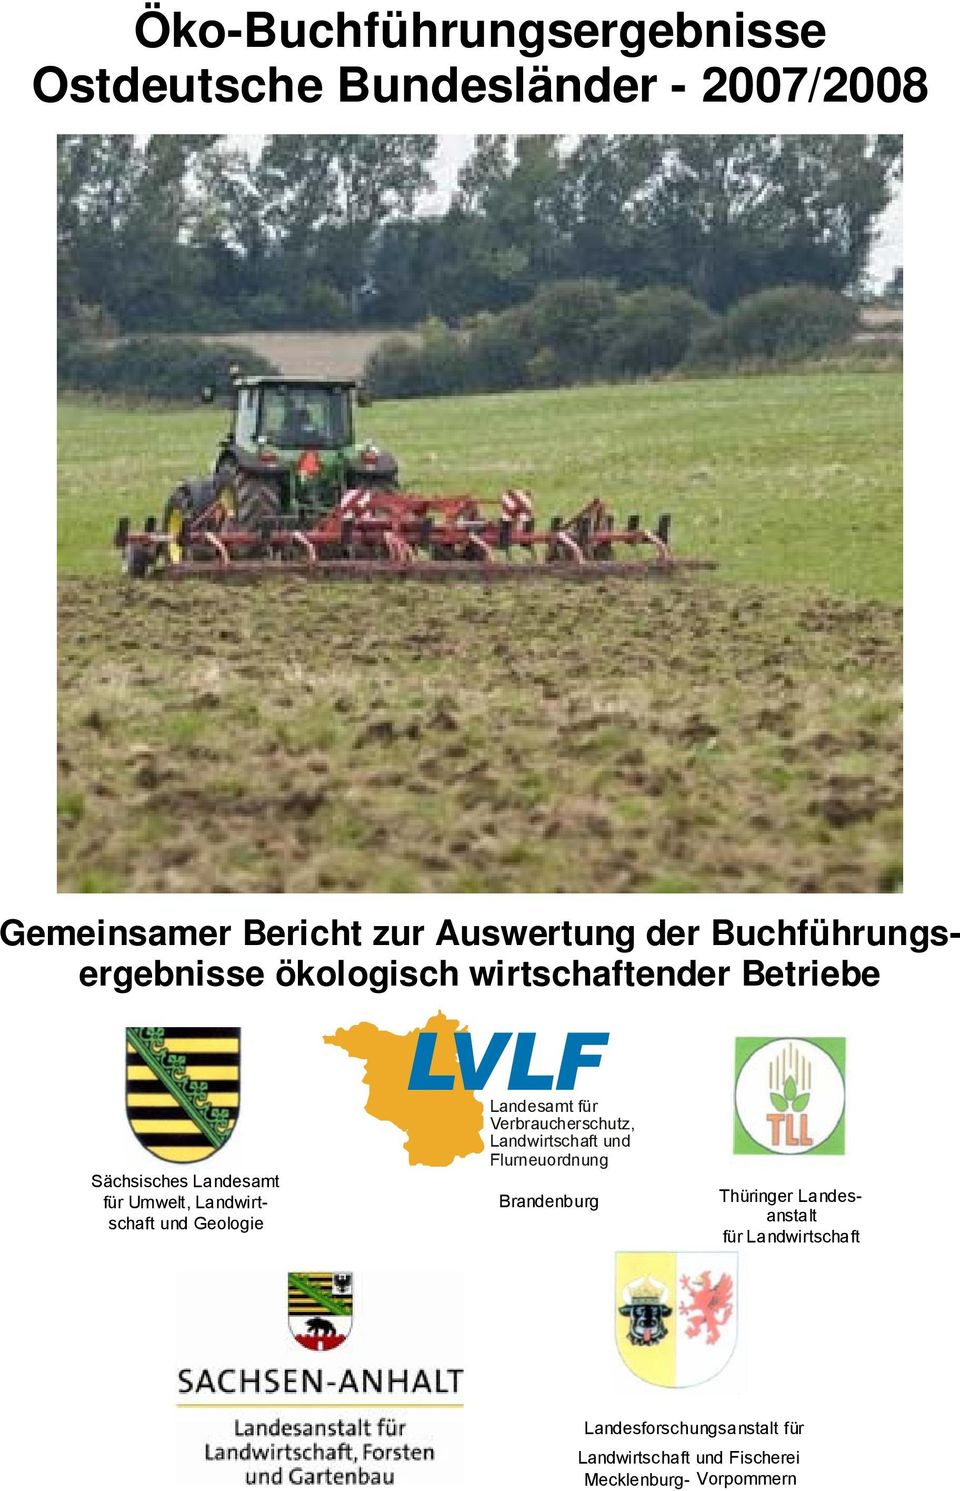 Landwirtschaft und Geologie Landesamt für Verbraucherschutz, Landwirtschaft und Flurneuordnung Brandenburg